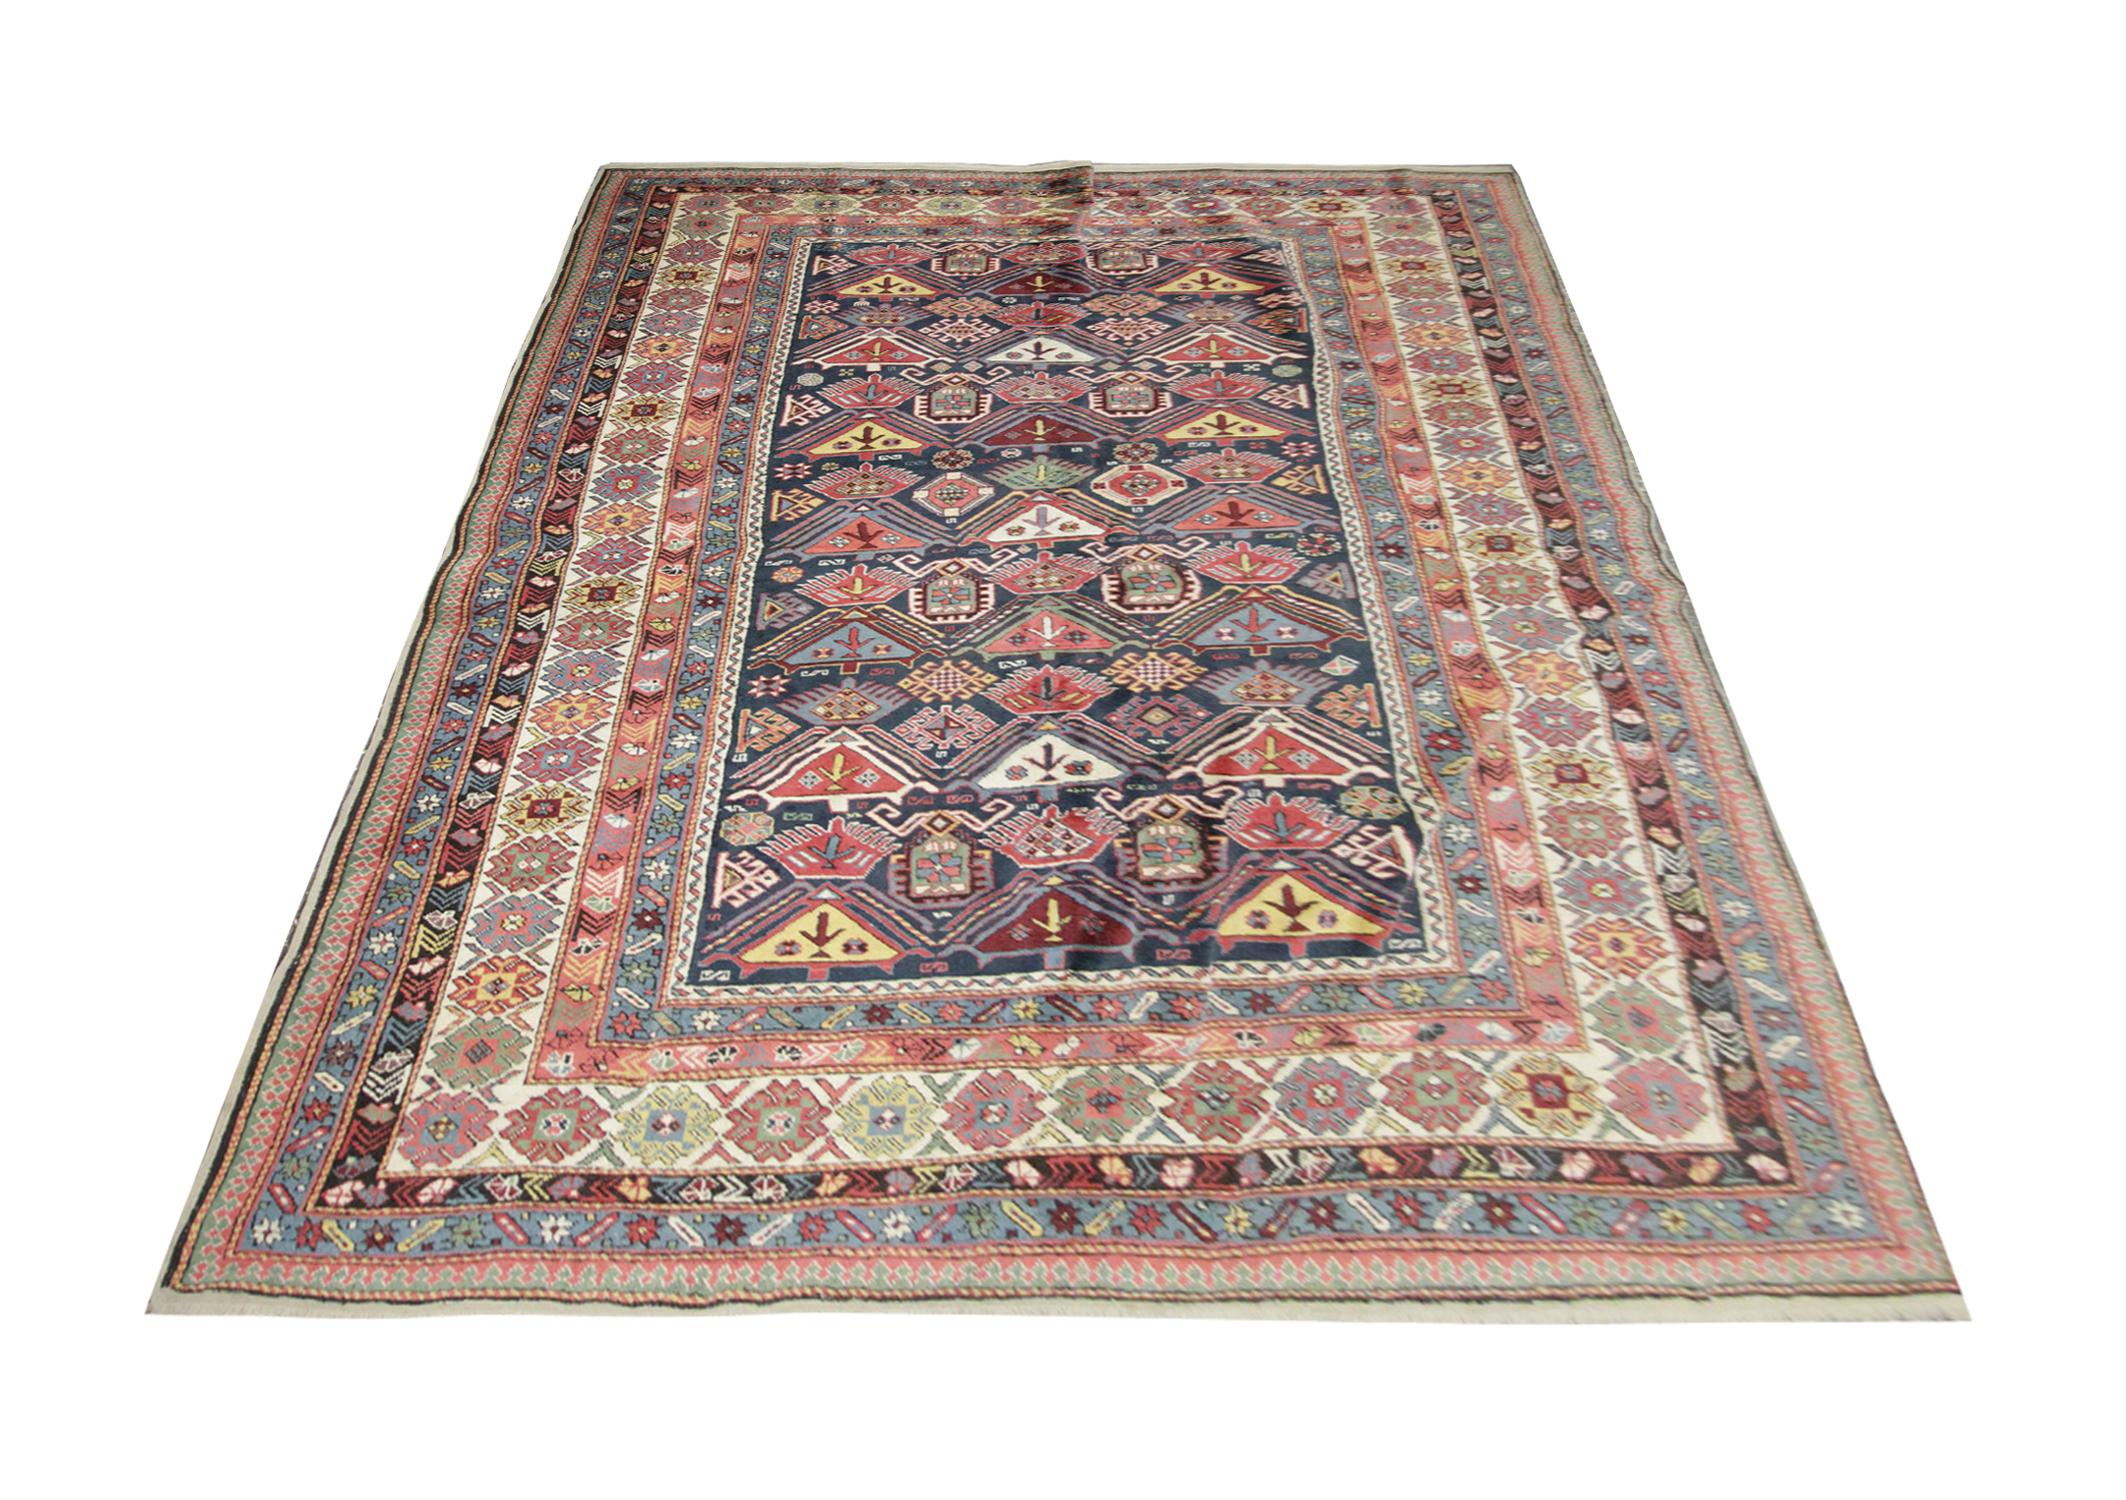 Dieser Orientteppich stammt aus Schirwan, Aserbaidschan, und wurde von Hand aus handgesponnener Wolle gewebt, die mit 100% biologischen Pflanzenfarben gefärbt wurde. Mit einer mehrschichtigen Bordüre und einem symmetrischen Muster hebt sich dieser